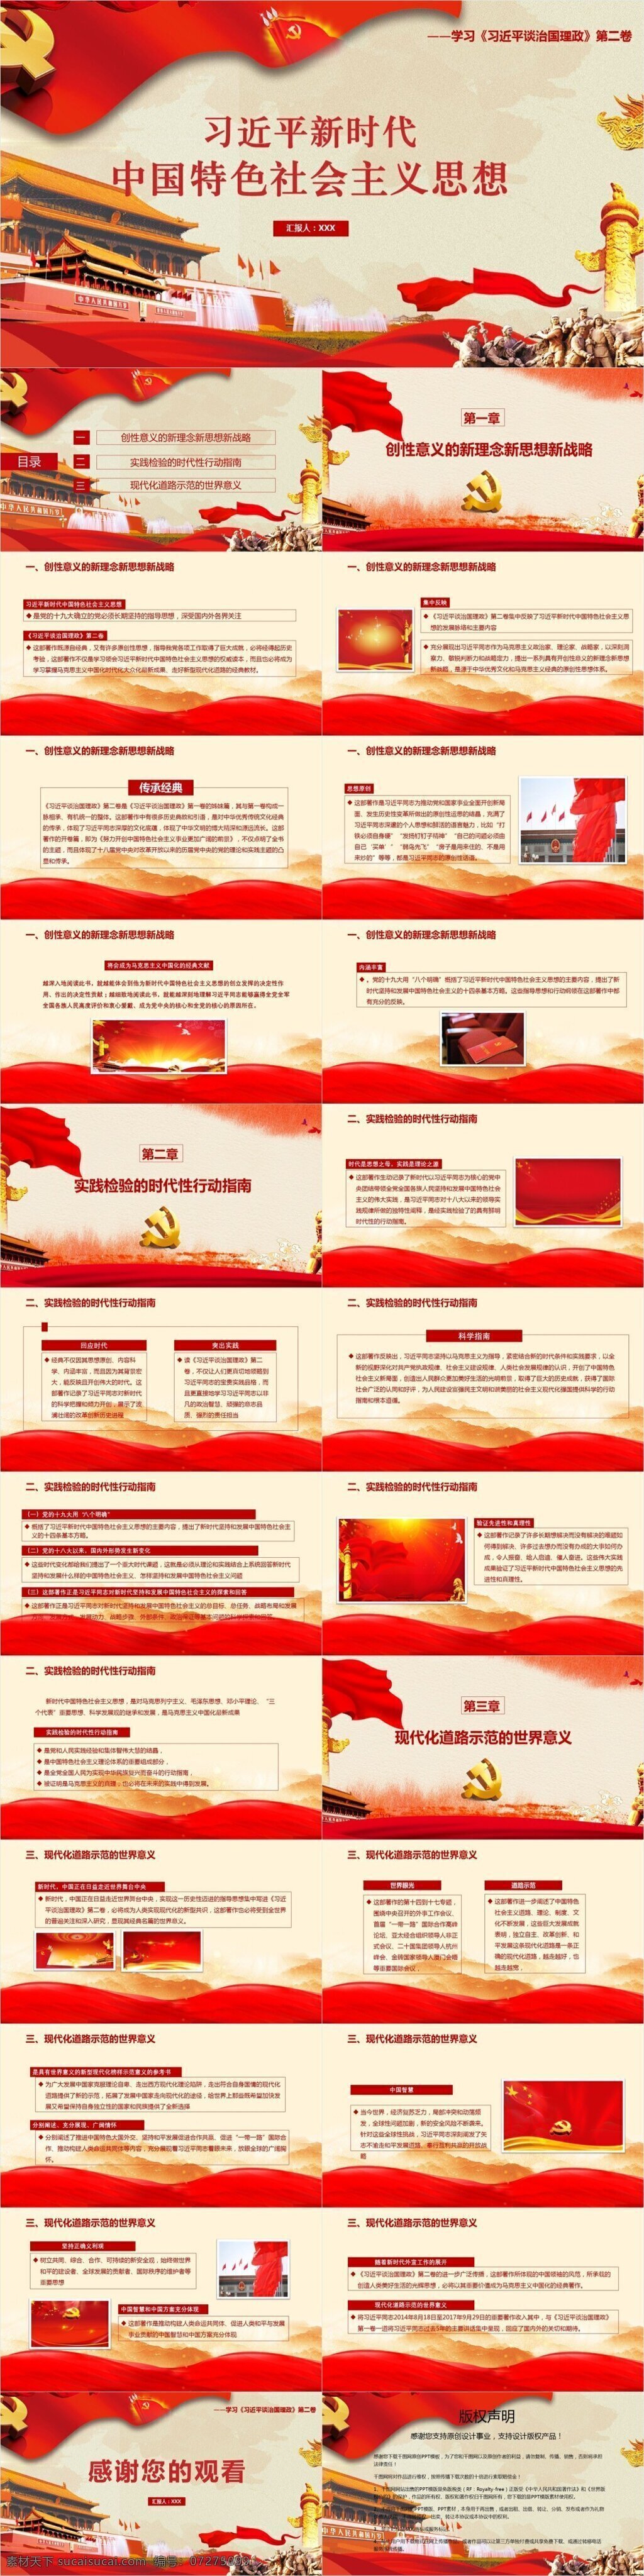 新时代 中国 特色 社会主义 思想 模板 范本 八个明确 党的十九大 世界意义 习近平 谈 治国 理 政 新 理念 战略 行动指南